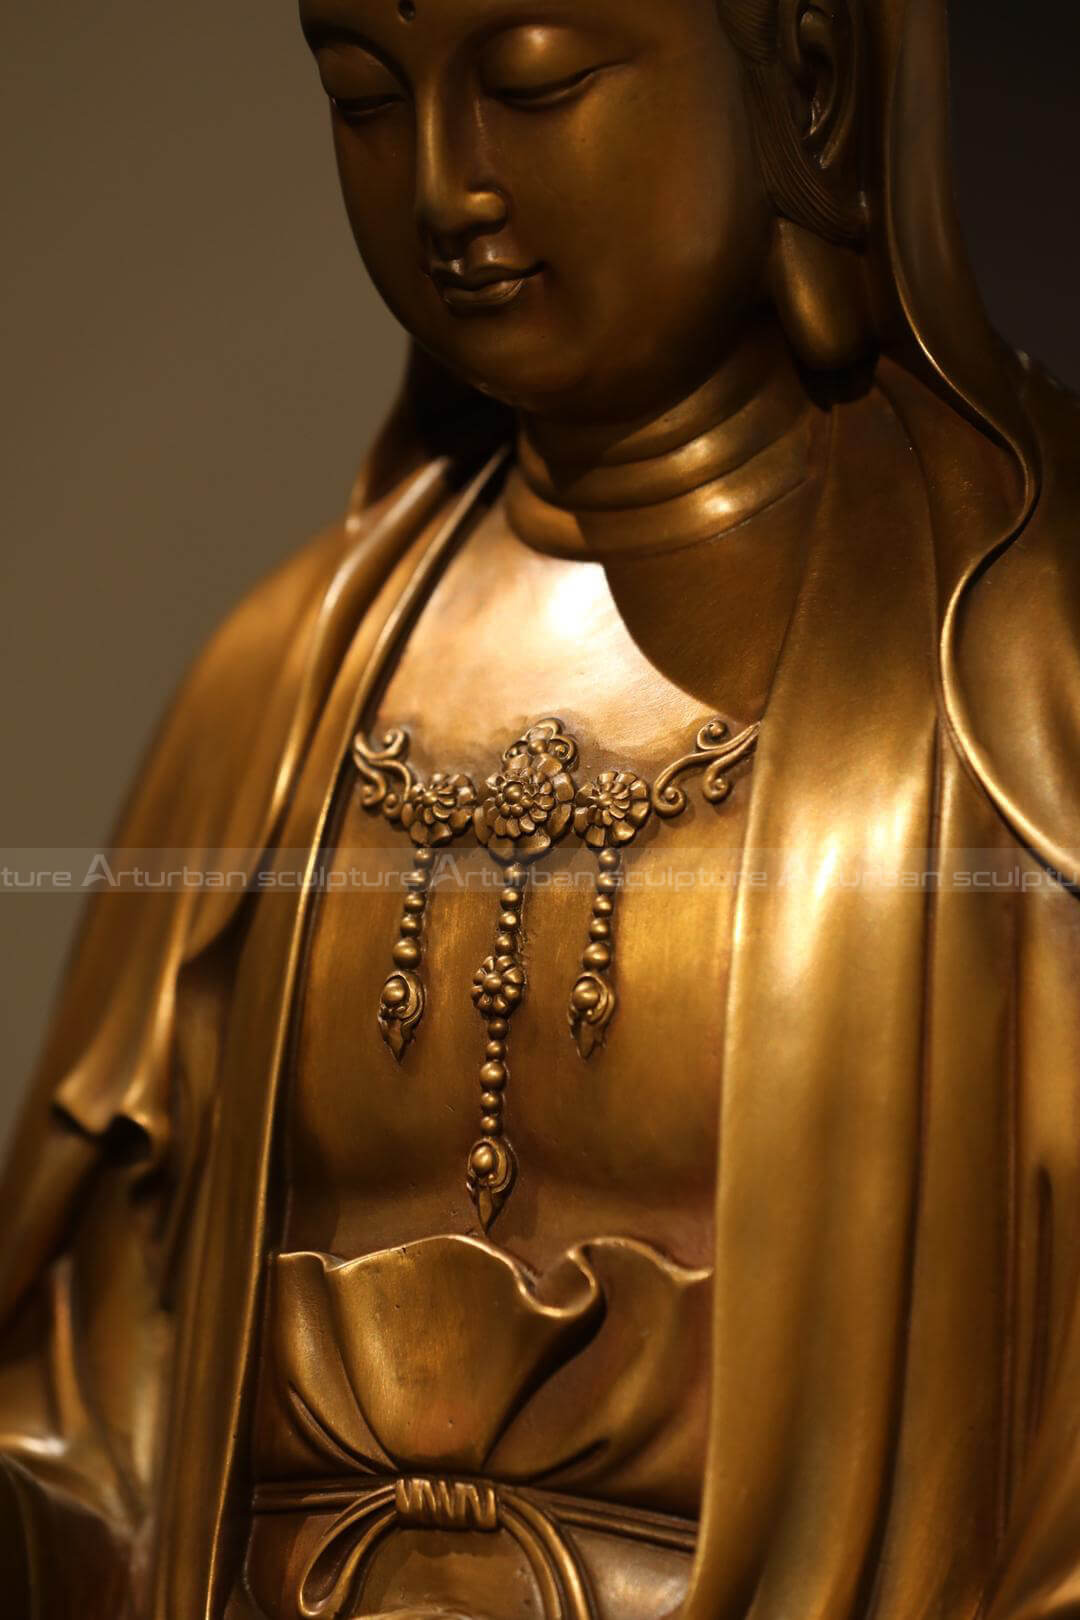 brass kwan yin statue